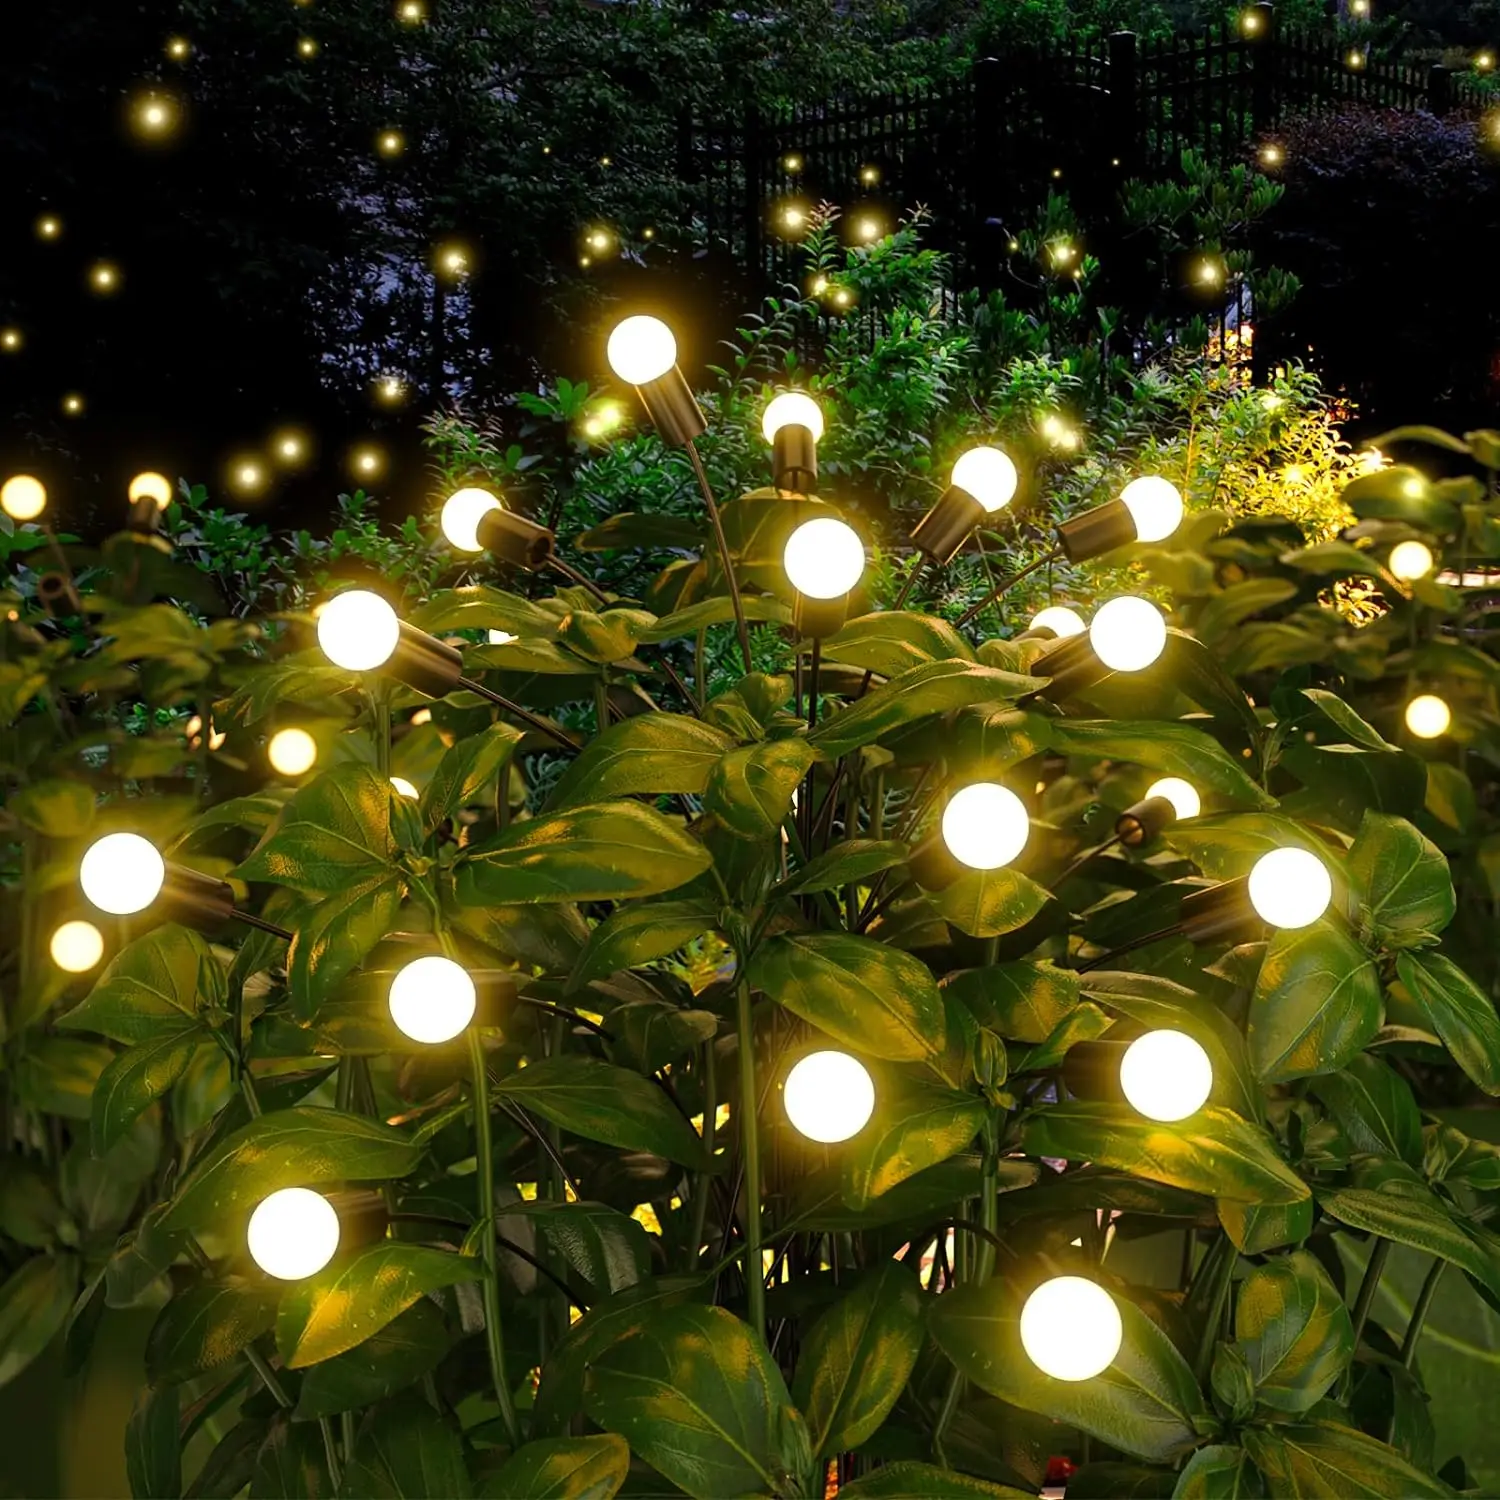 Solar Garden Light, High Flexibility, Swing, Landscape, Lawn, Outdoor, Waterproof, Channel Decoration, 8LED Firefly Lights